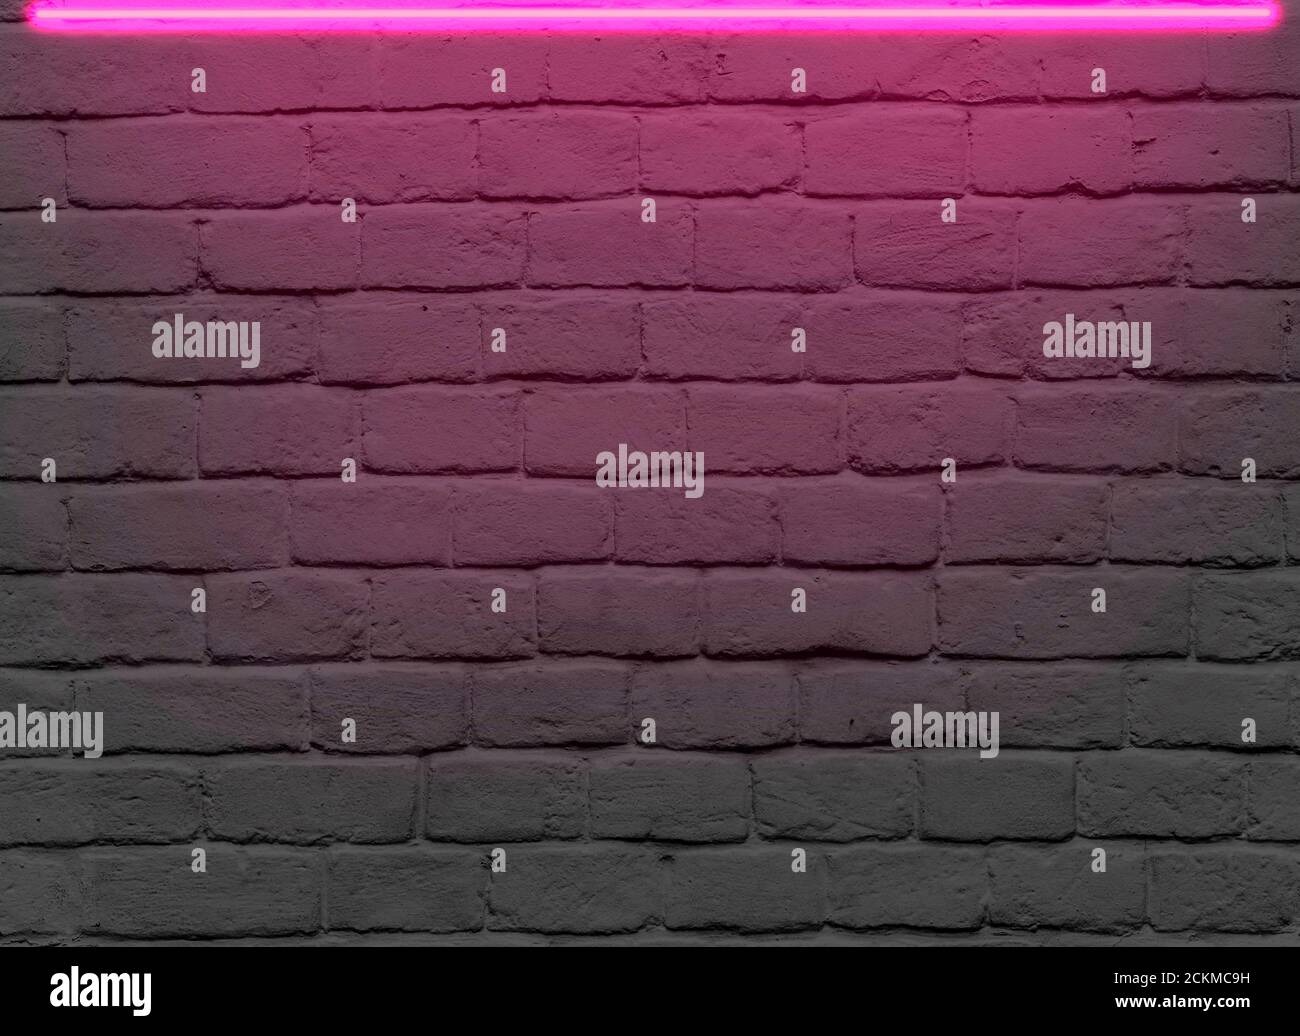 Mur de briques avec néon rose pour des idées publicitaires Banque D'Images